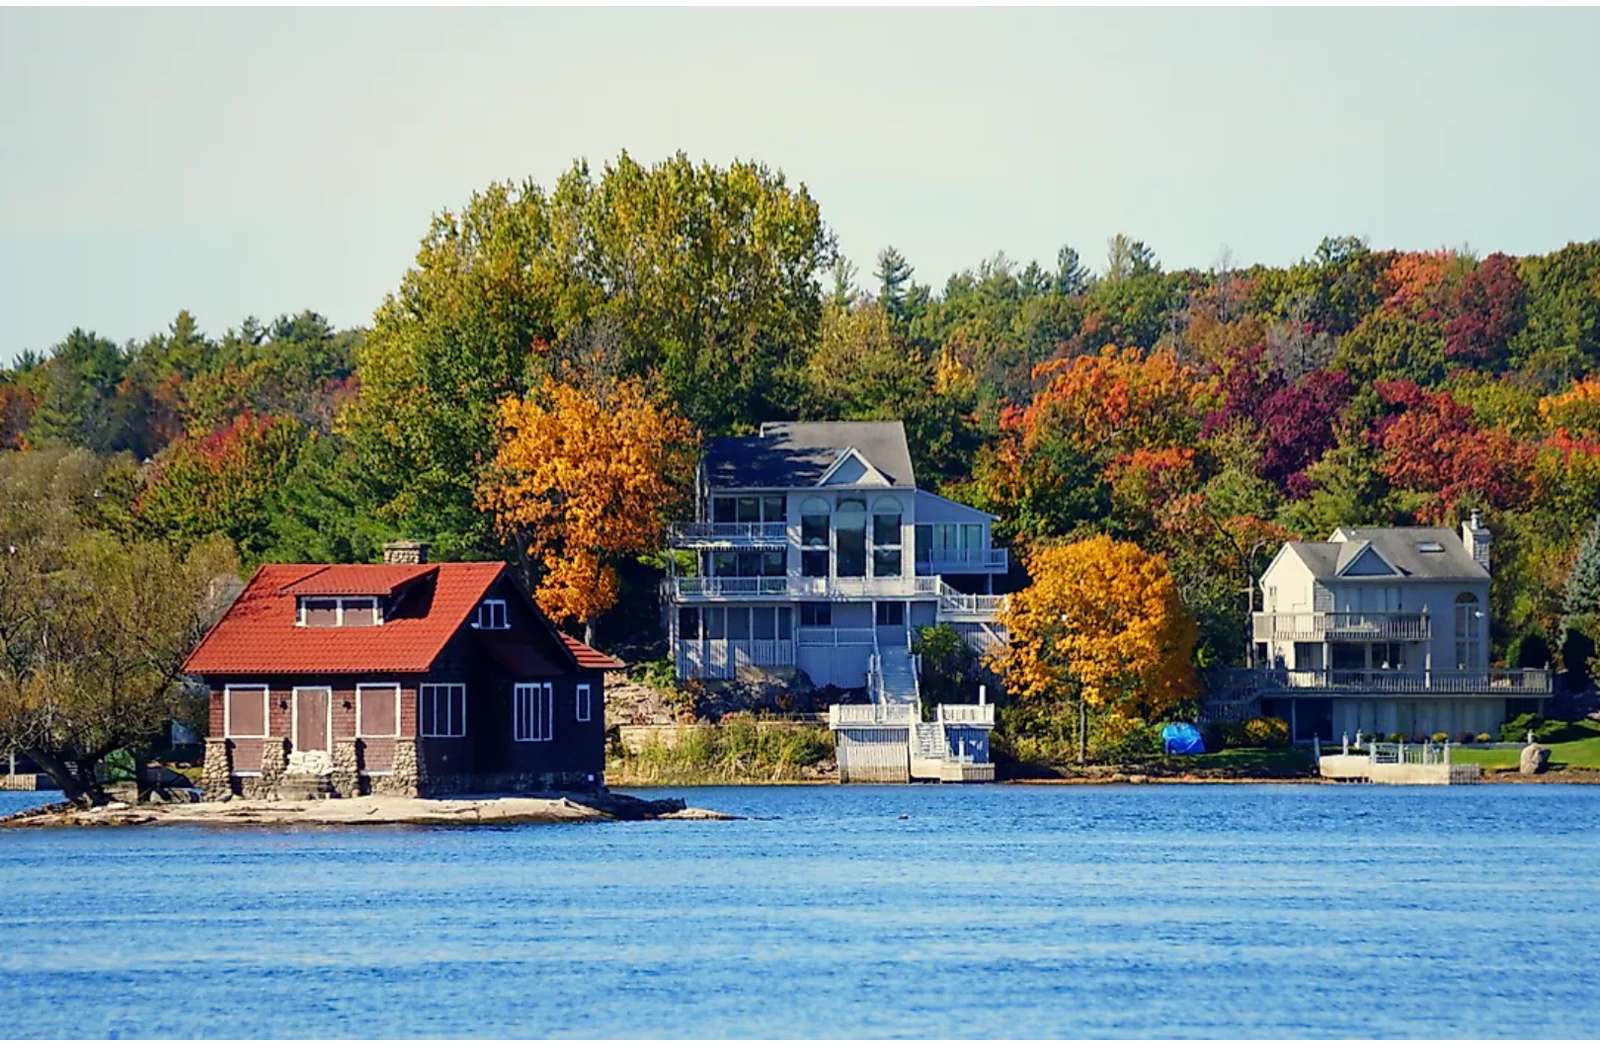 Къщи край езерото през есента. онлайн пъзел